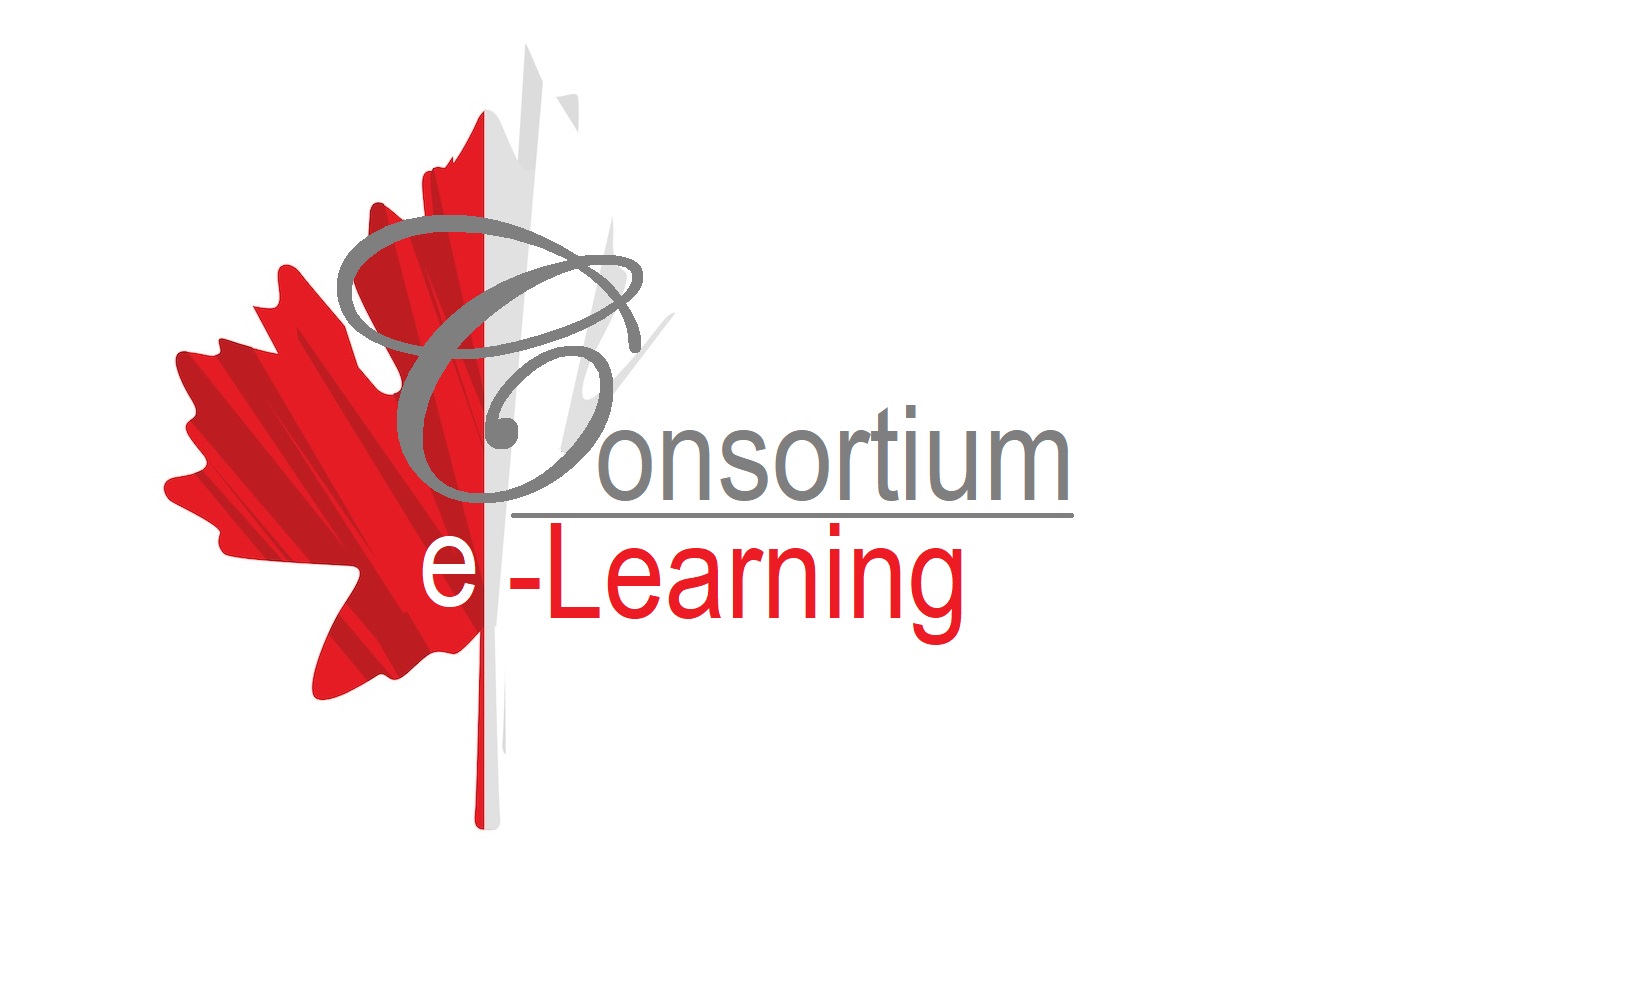 Consortium eLearning